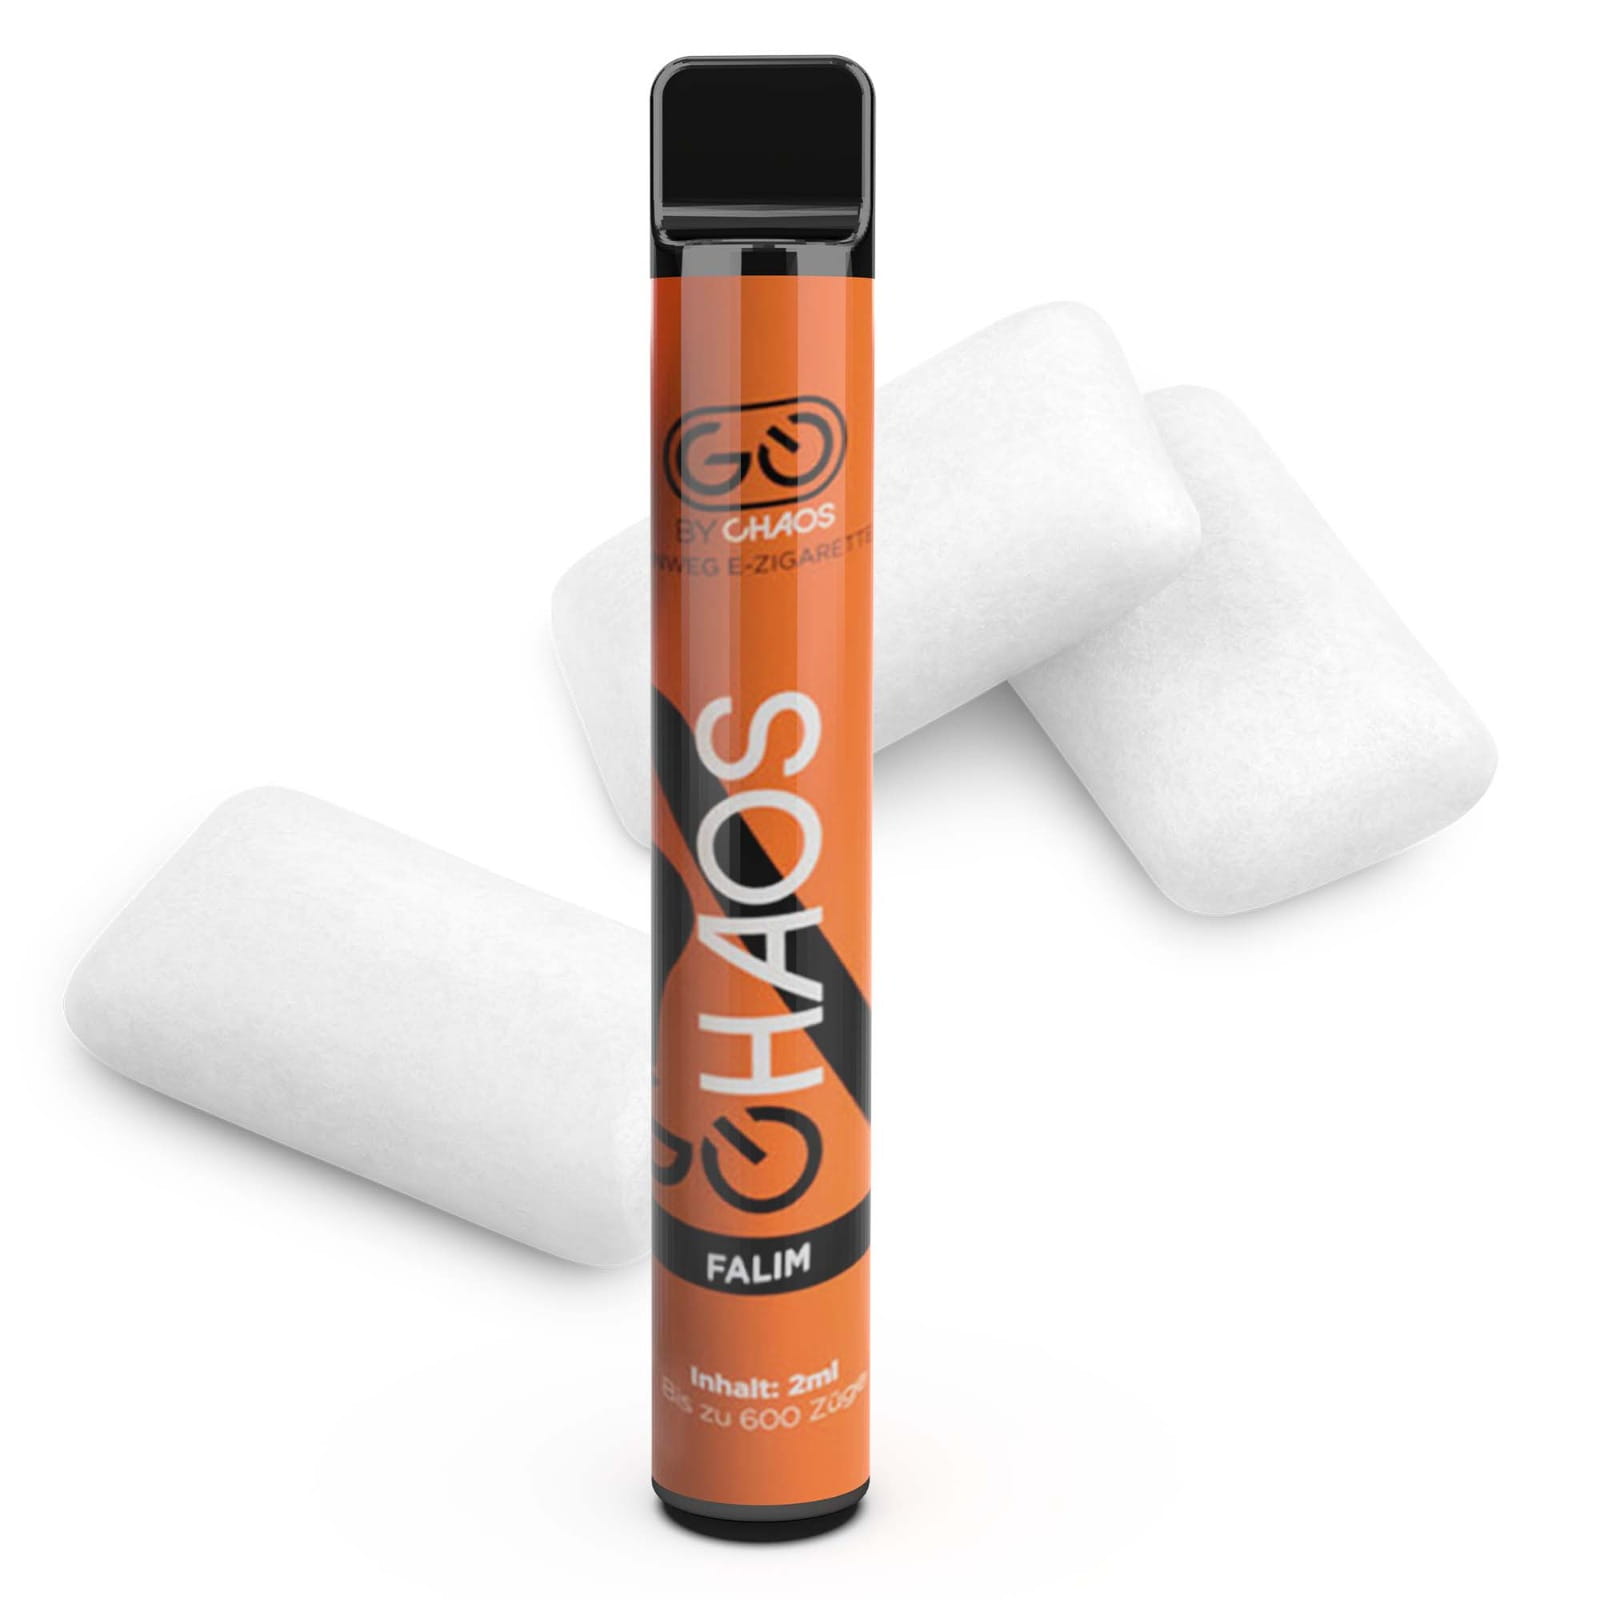 Chaos 600 - Einweg E-Zigarette - Falim 2% Nikotin